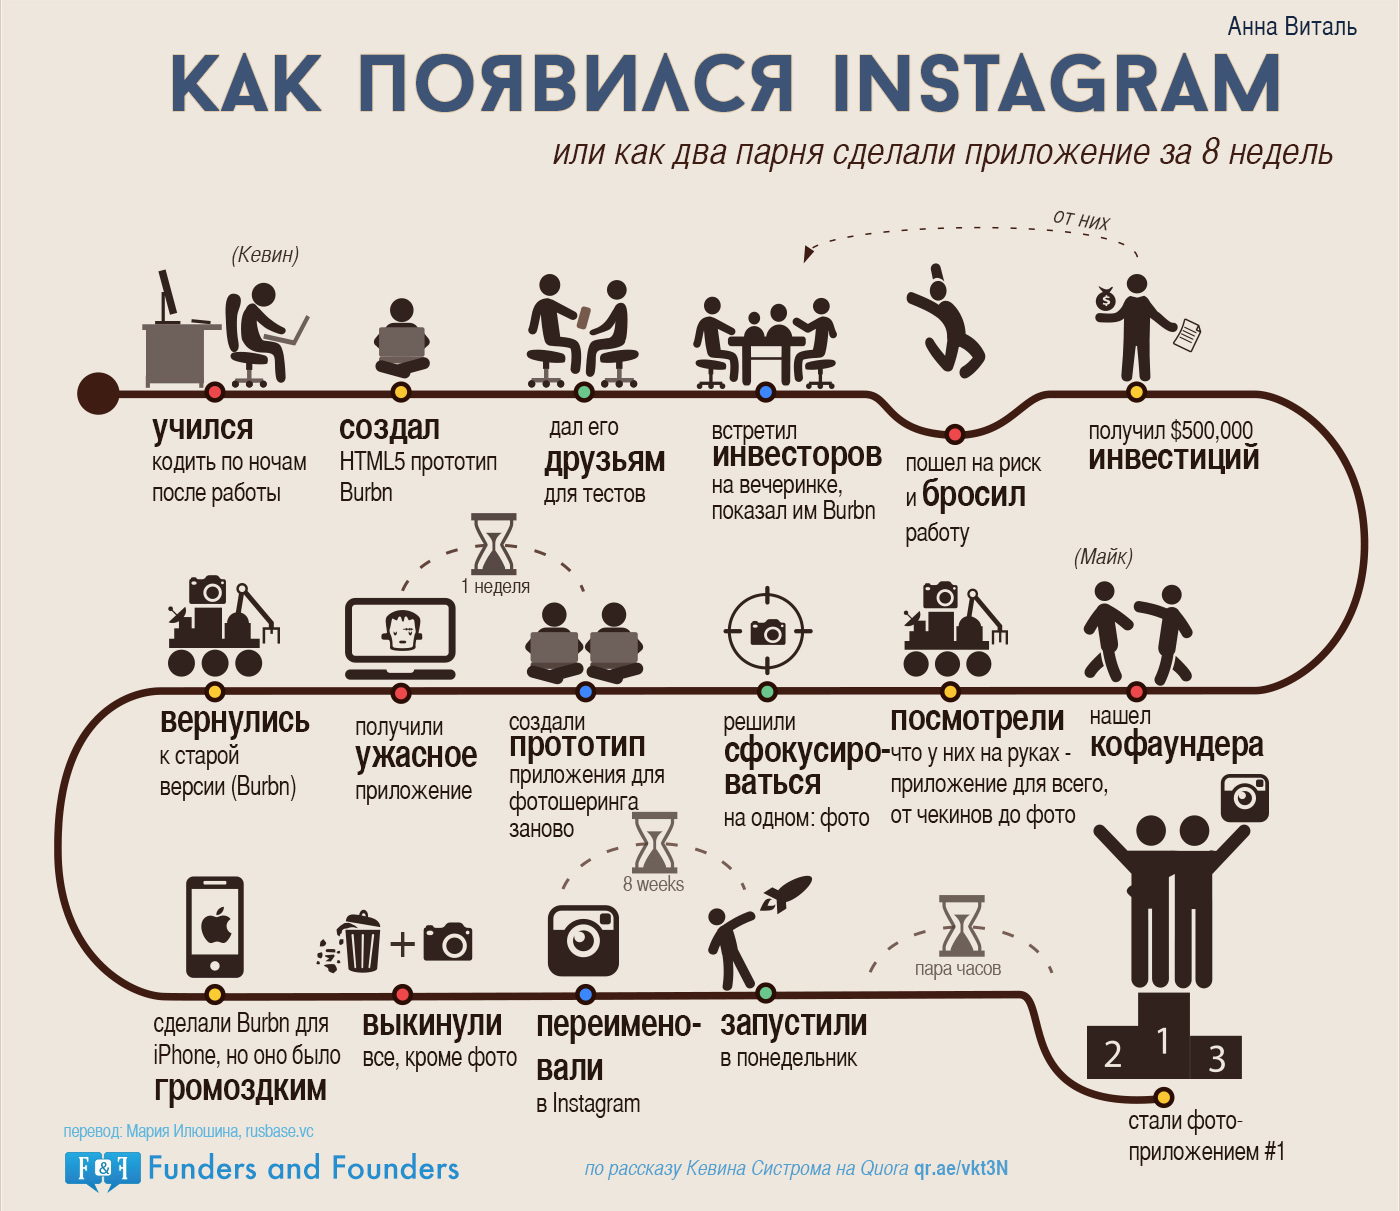 Как появился Instagram - инфографика